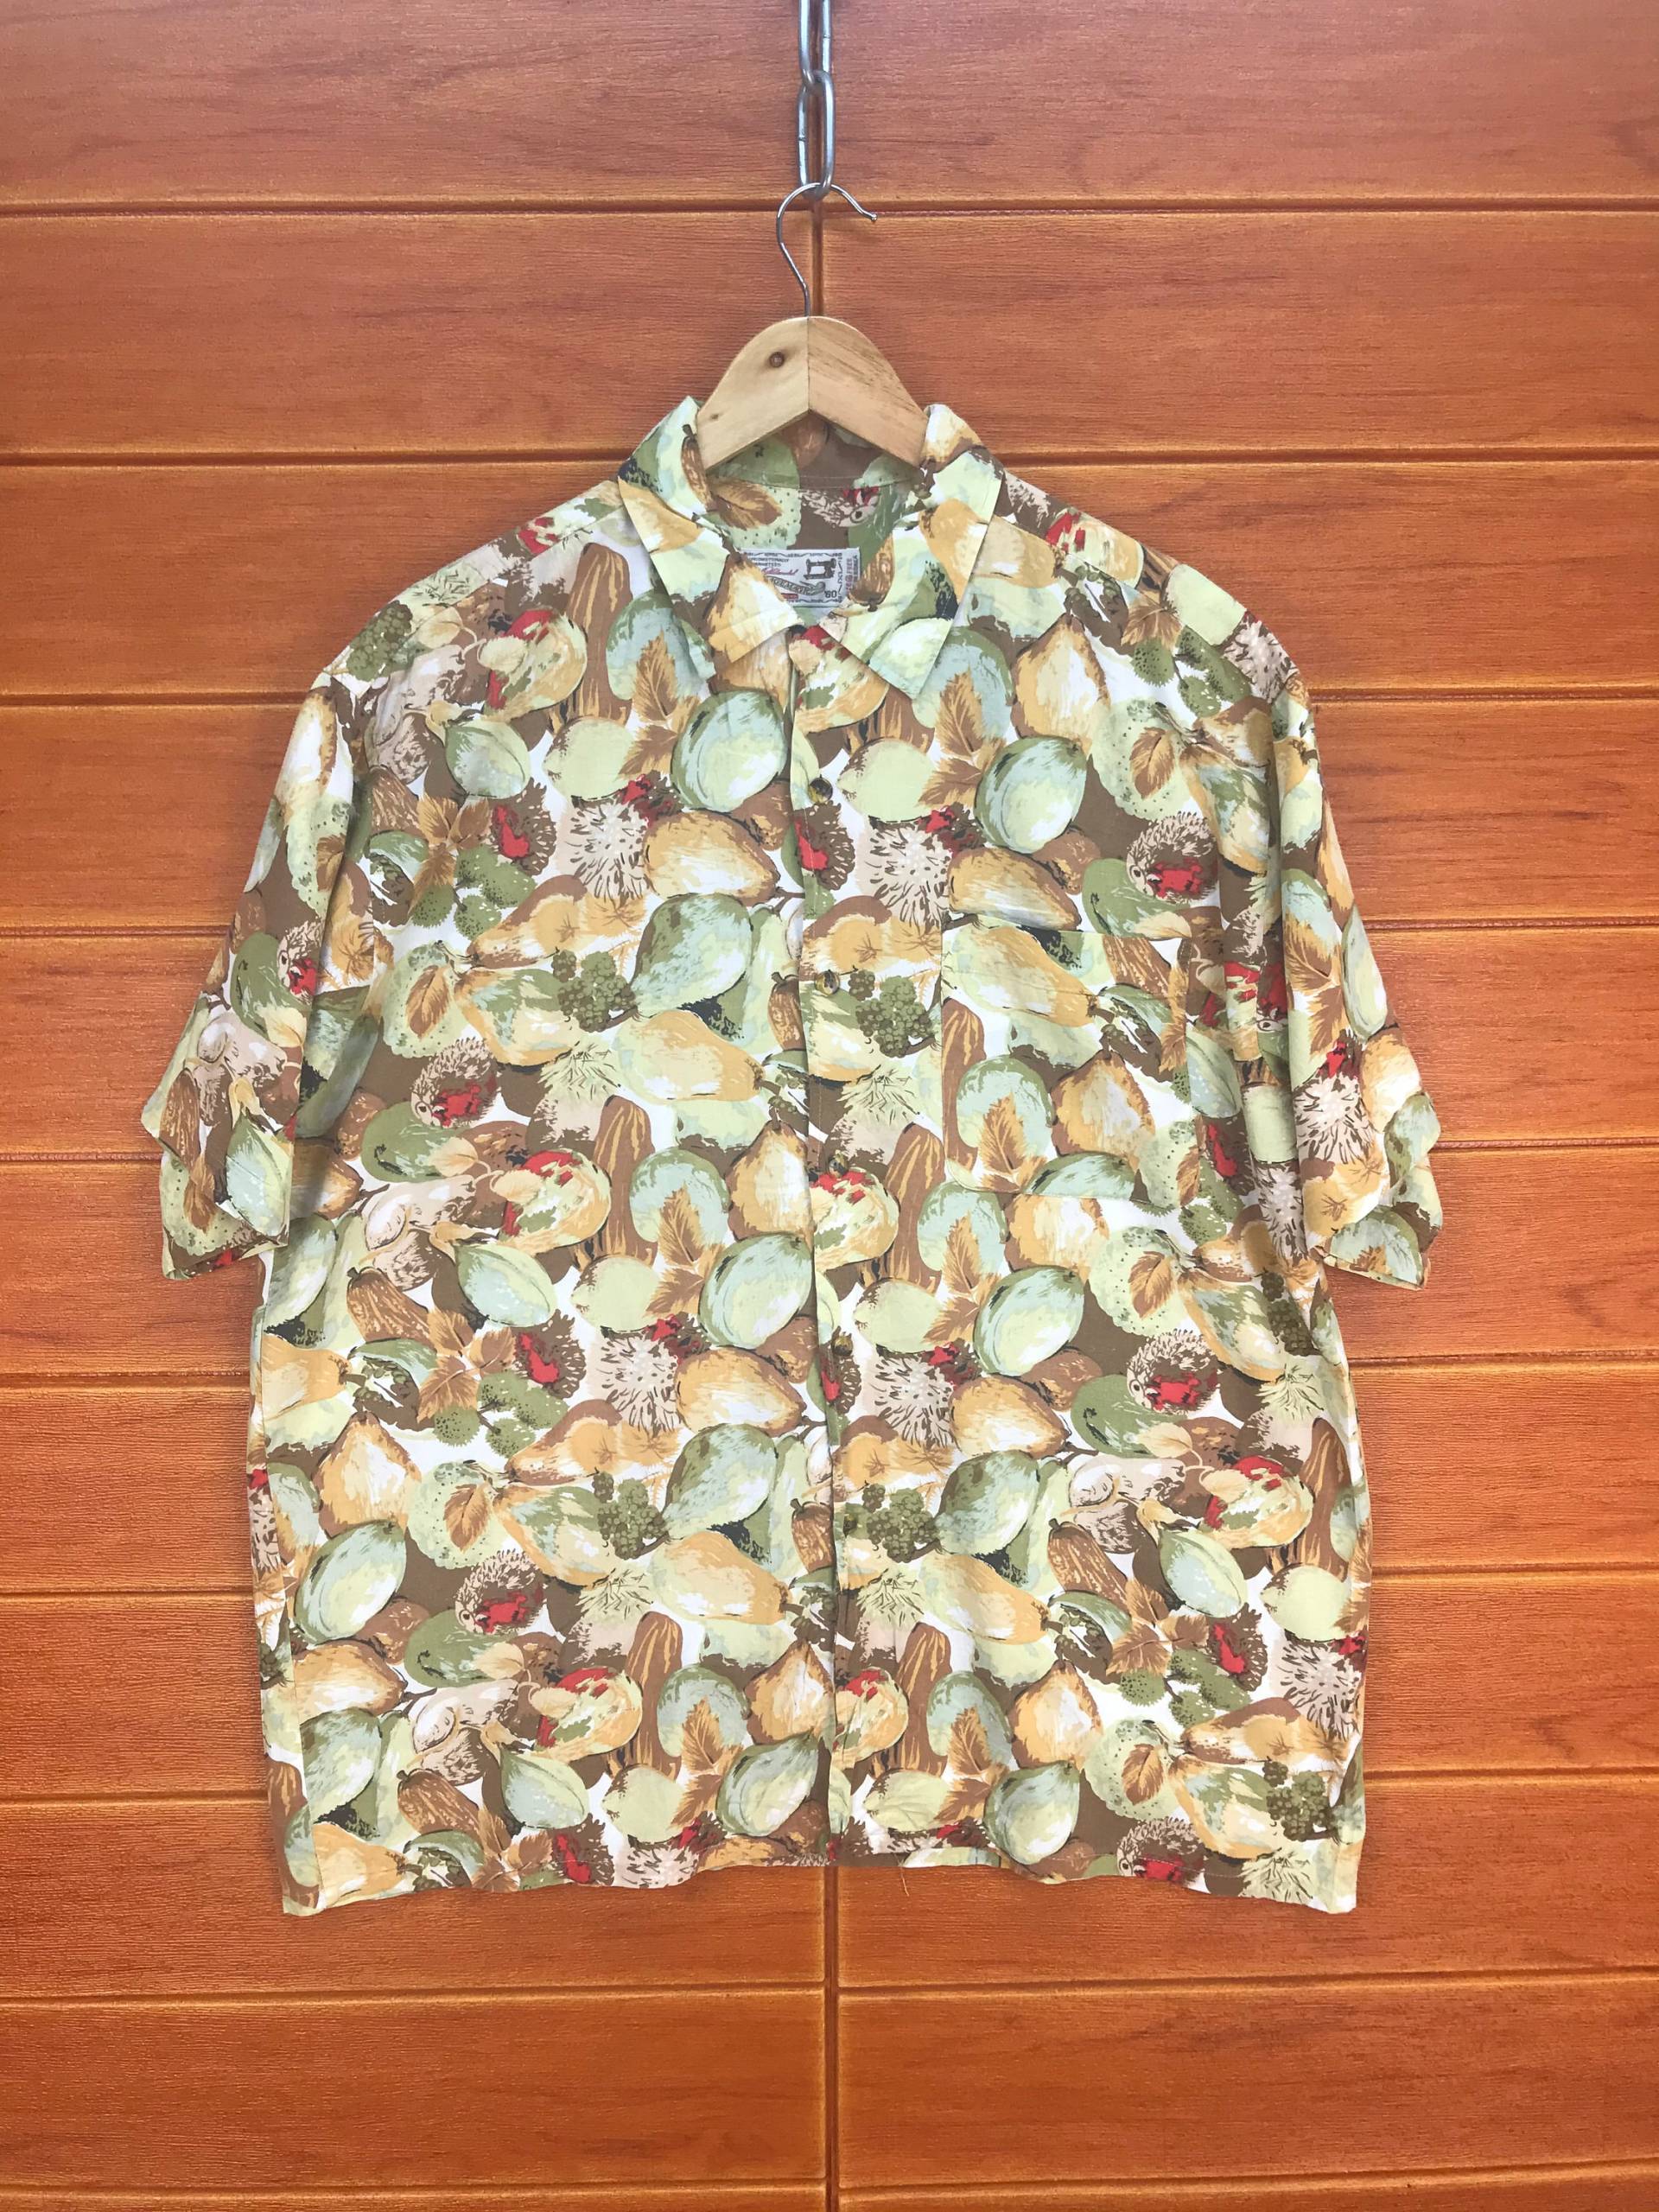 Vintage Hawaiihemd Bild Magie Asiatisch Früchte/Aloha Wear Hemd Rockabilly Sommer Größe Xl von RedLandVtg